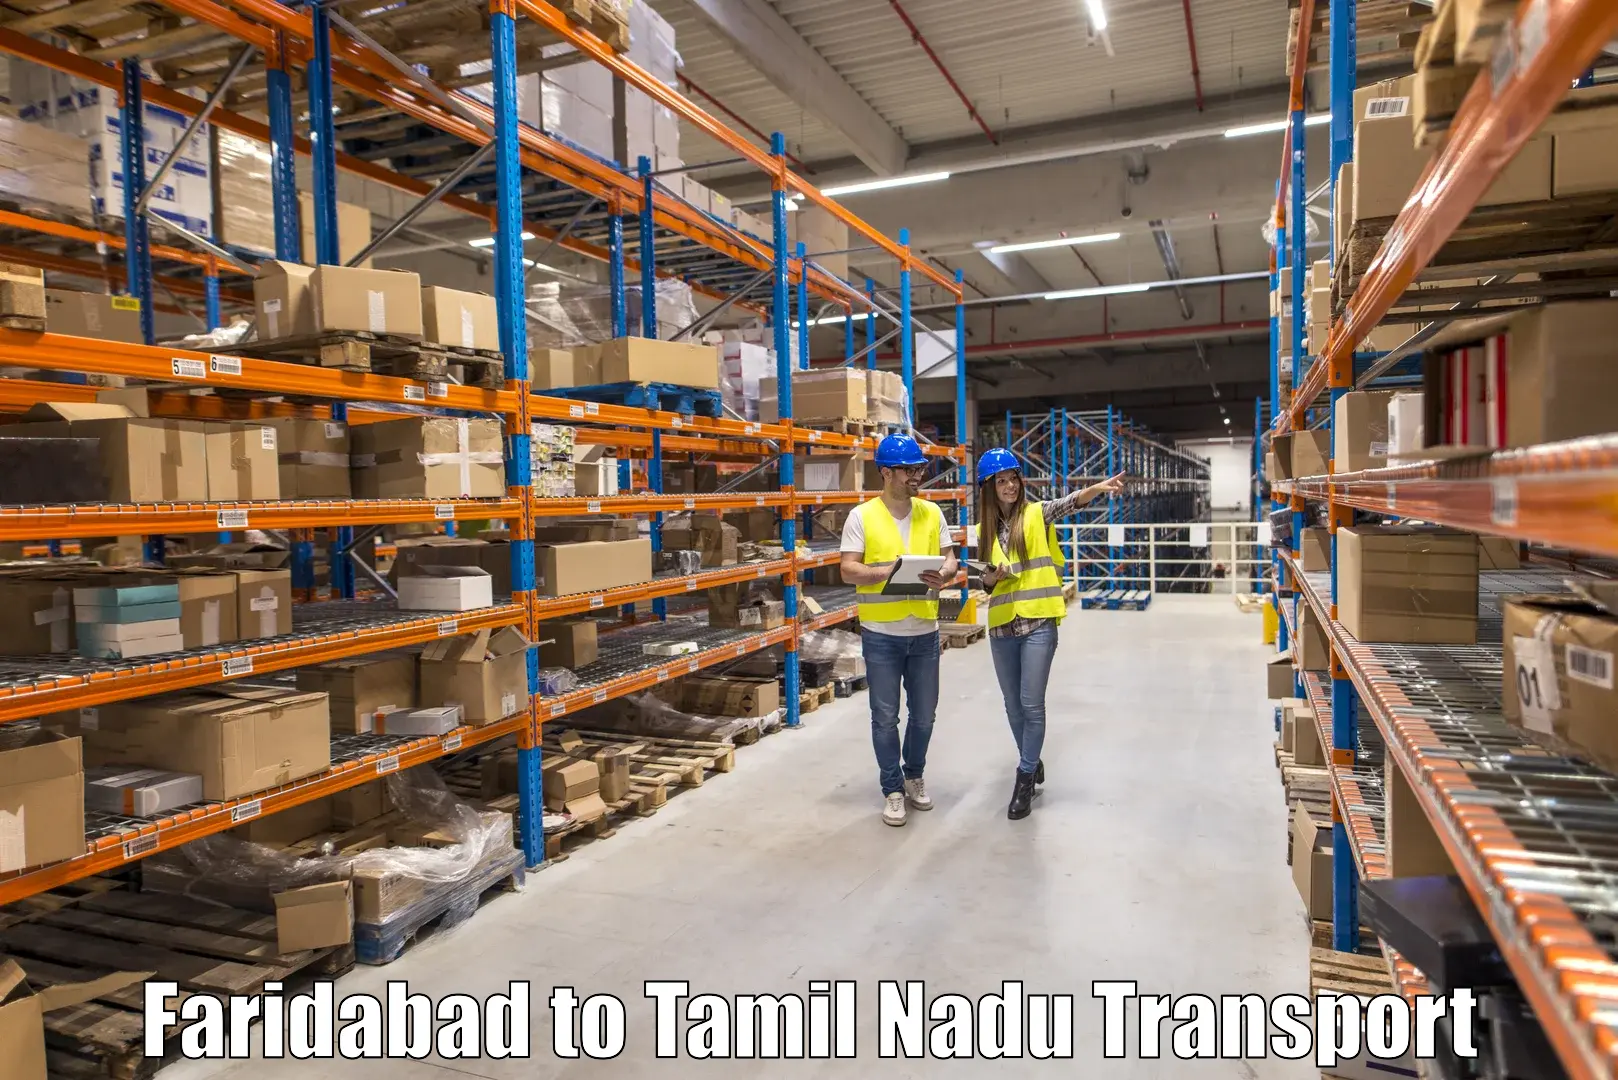 Nationwide transport services Faridabad to Sathyamangalam